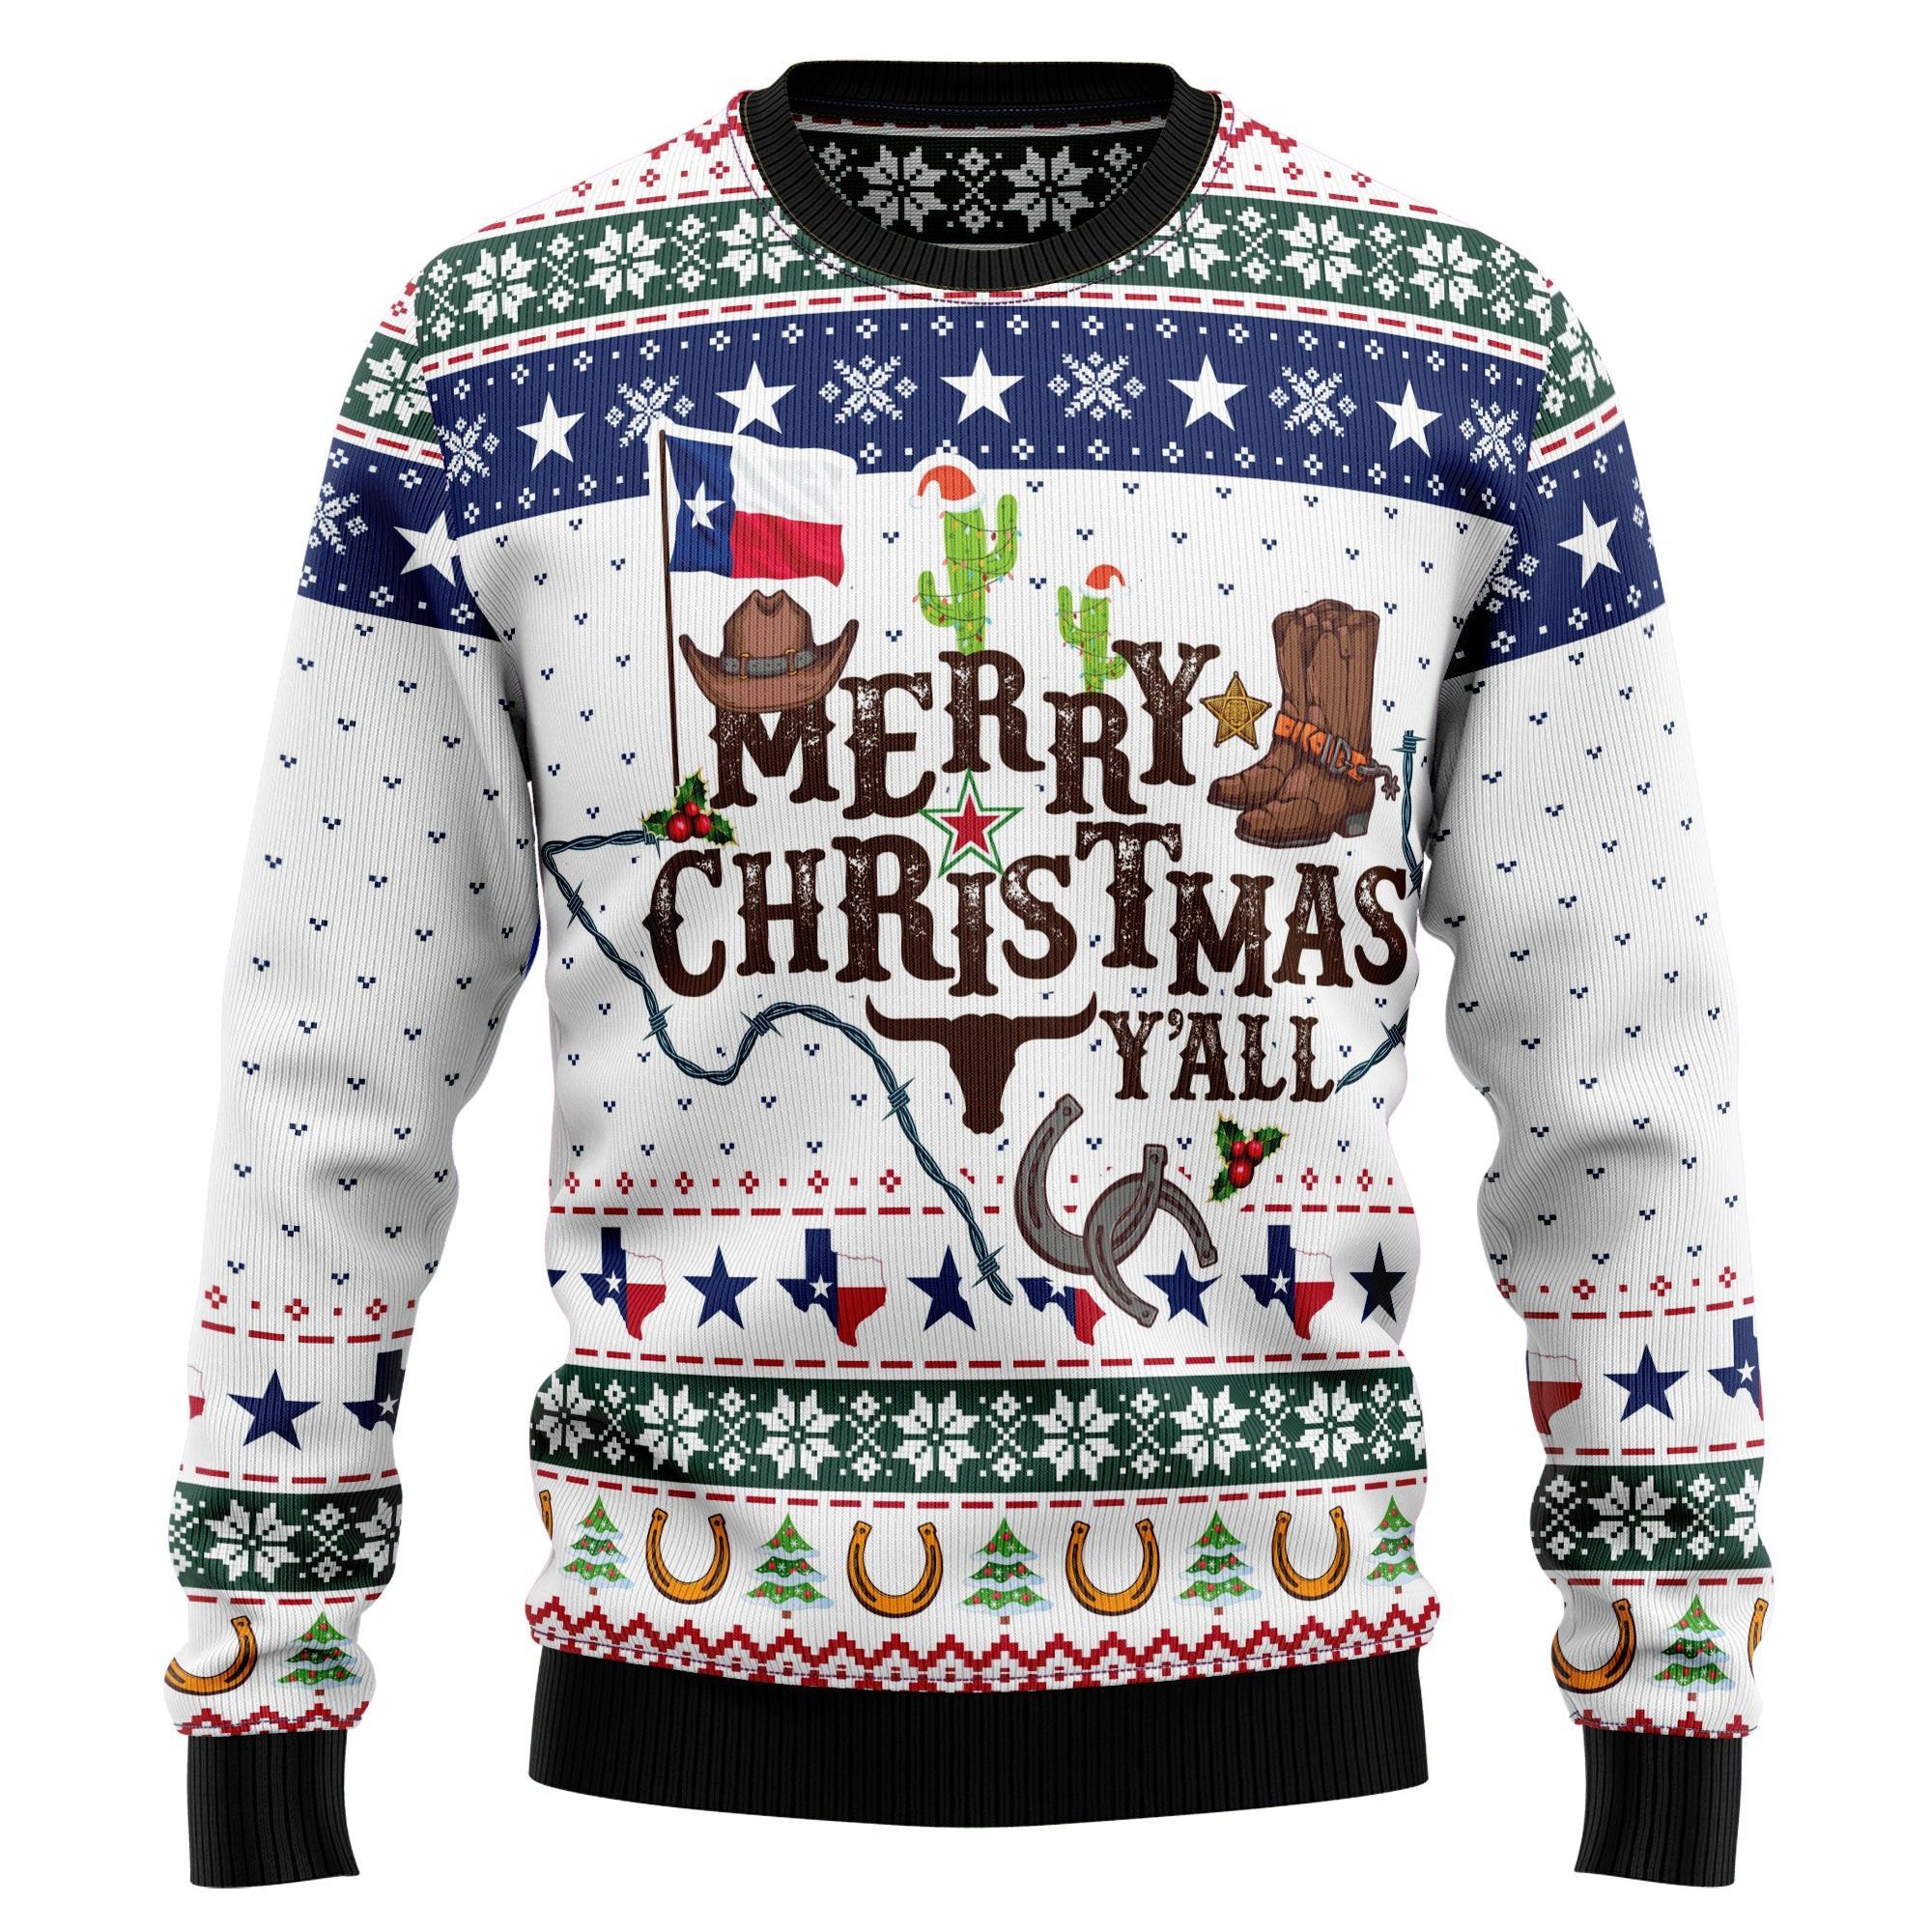 Merry Christmas Yall Texas Ugly Christmas Sweater